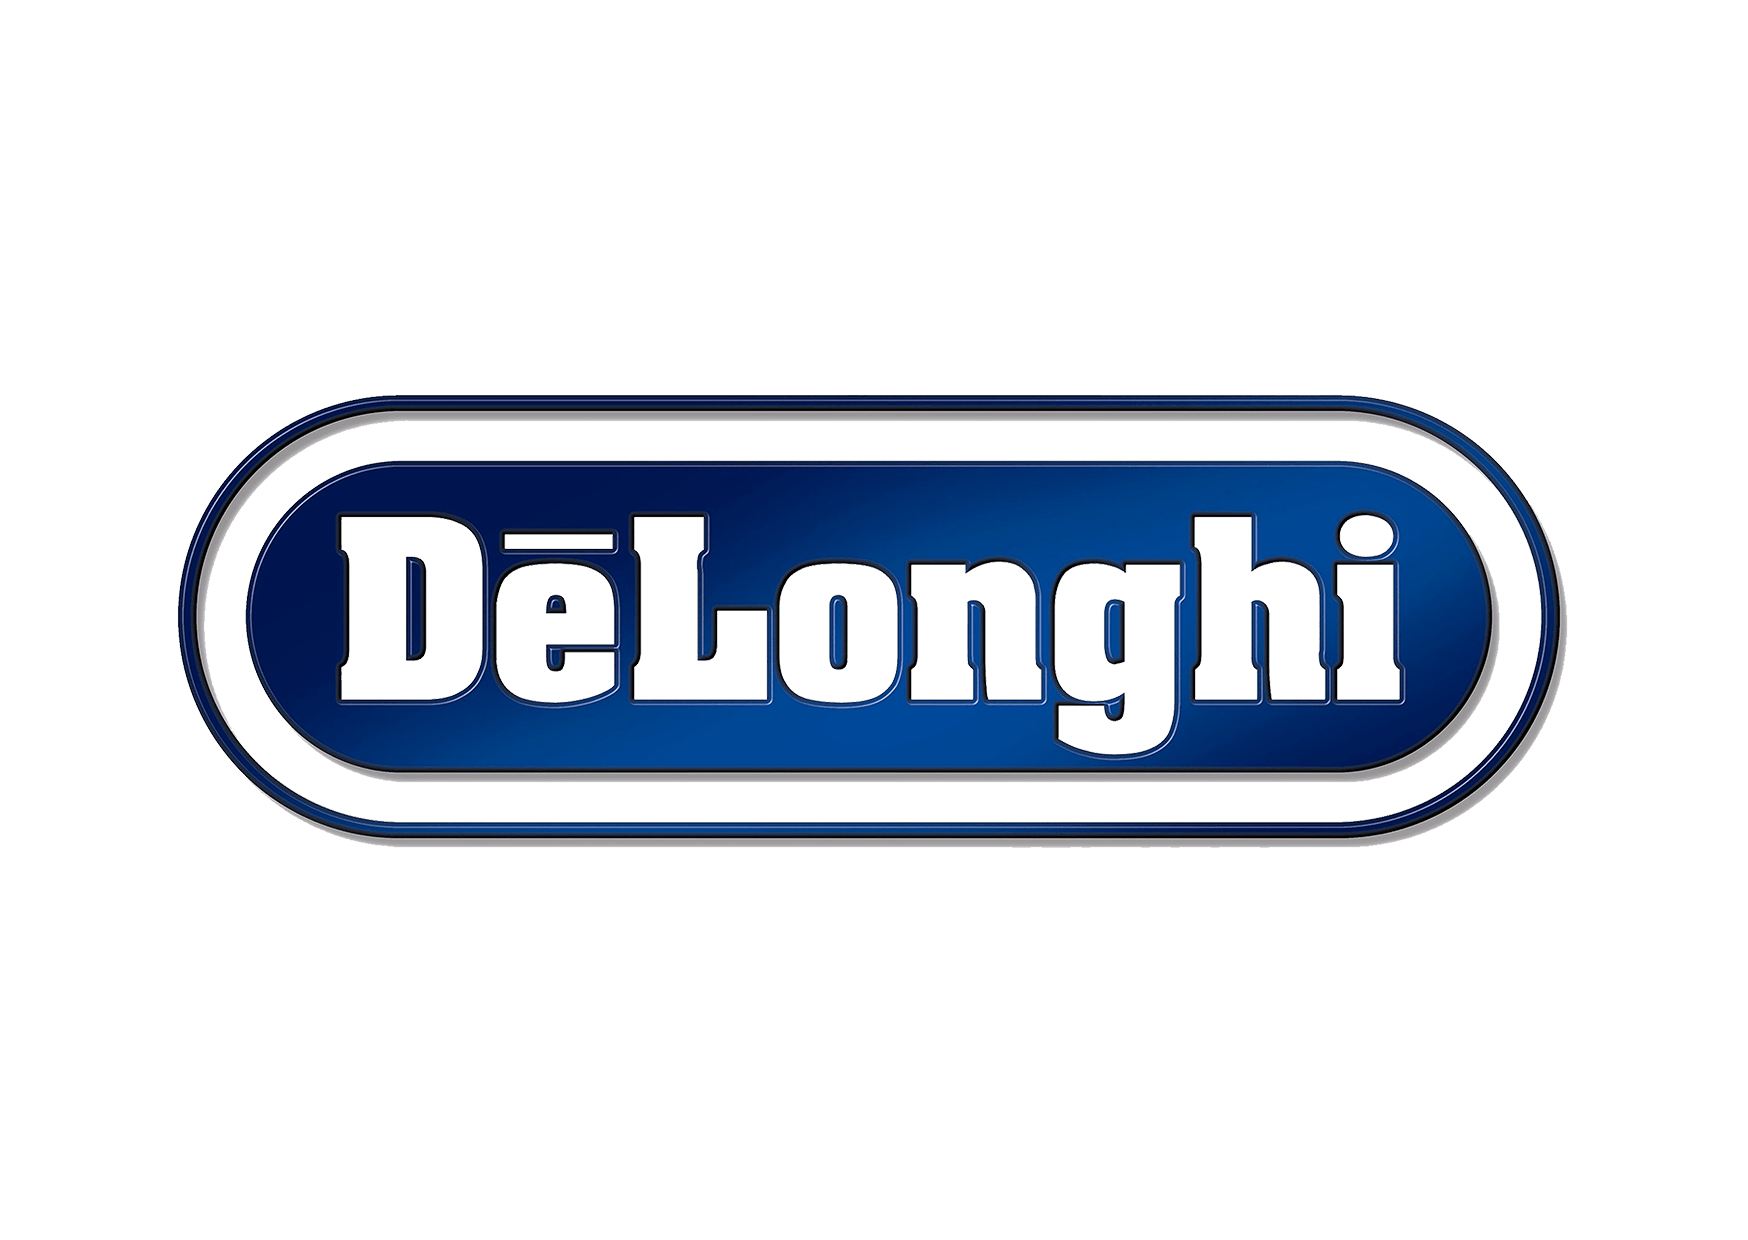 Delonghi – Logos Download